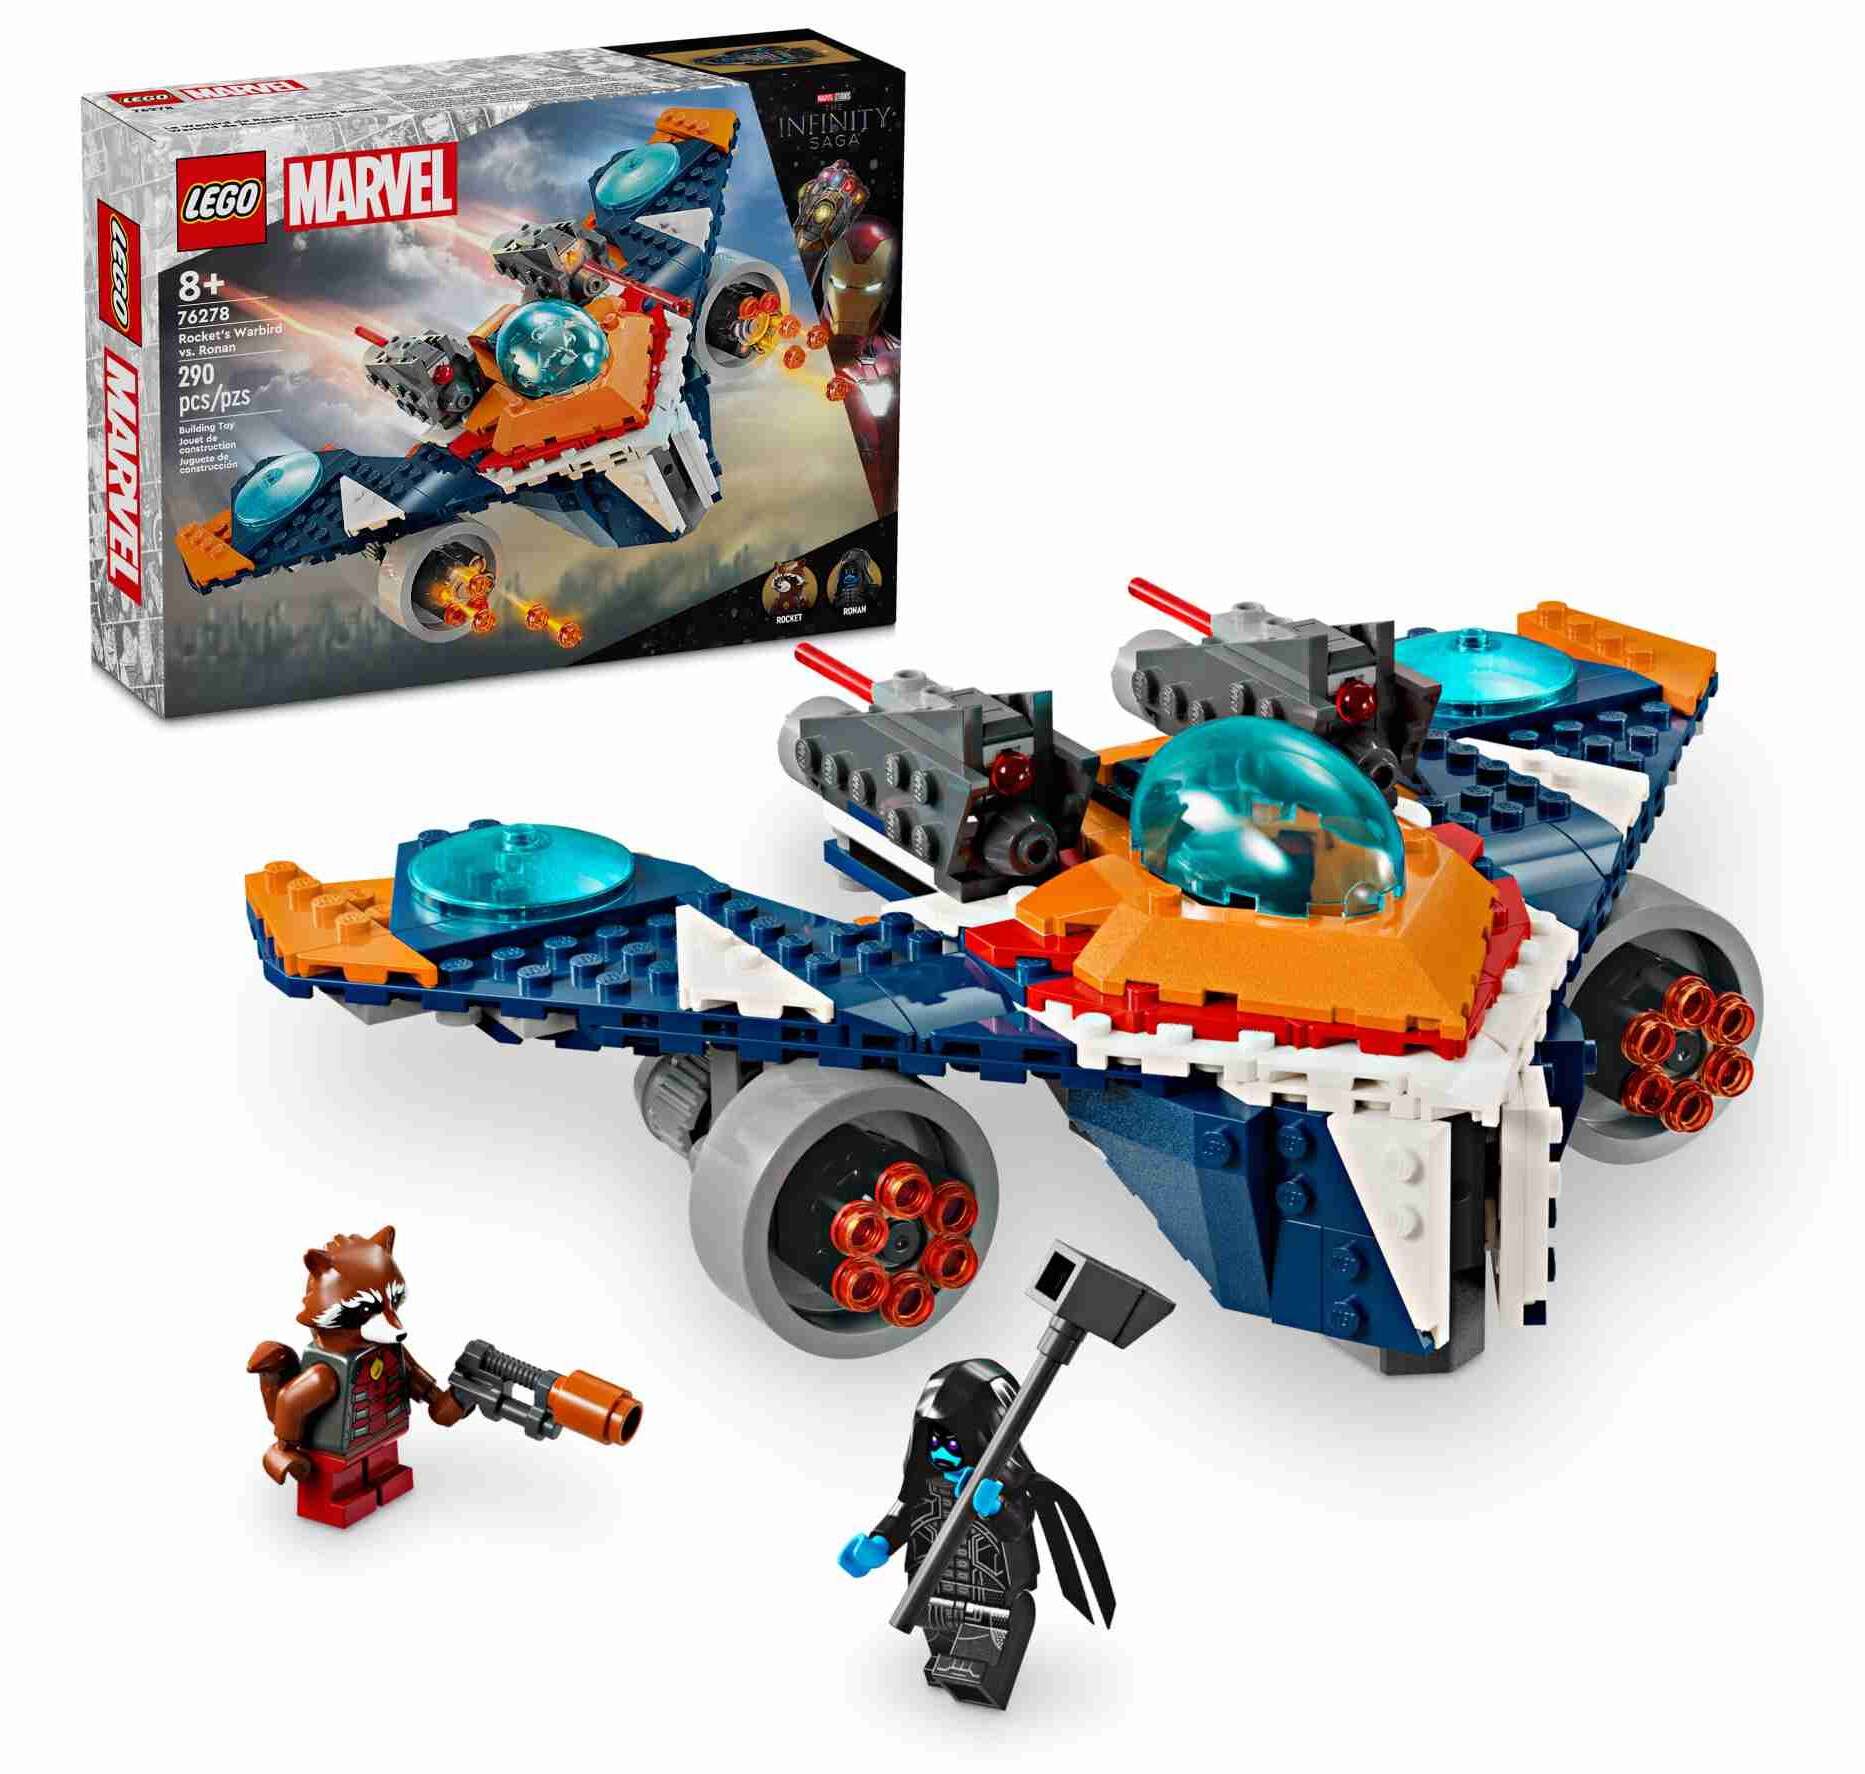 LEGO Marvel Spiderman - Coche de Spider-Man y Doc Ock (10789) desde 7,99 €